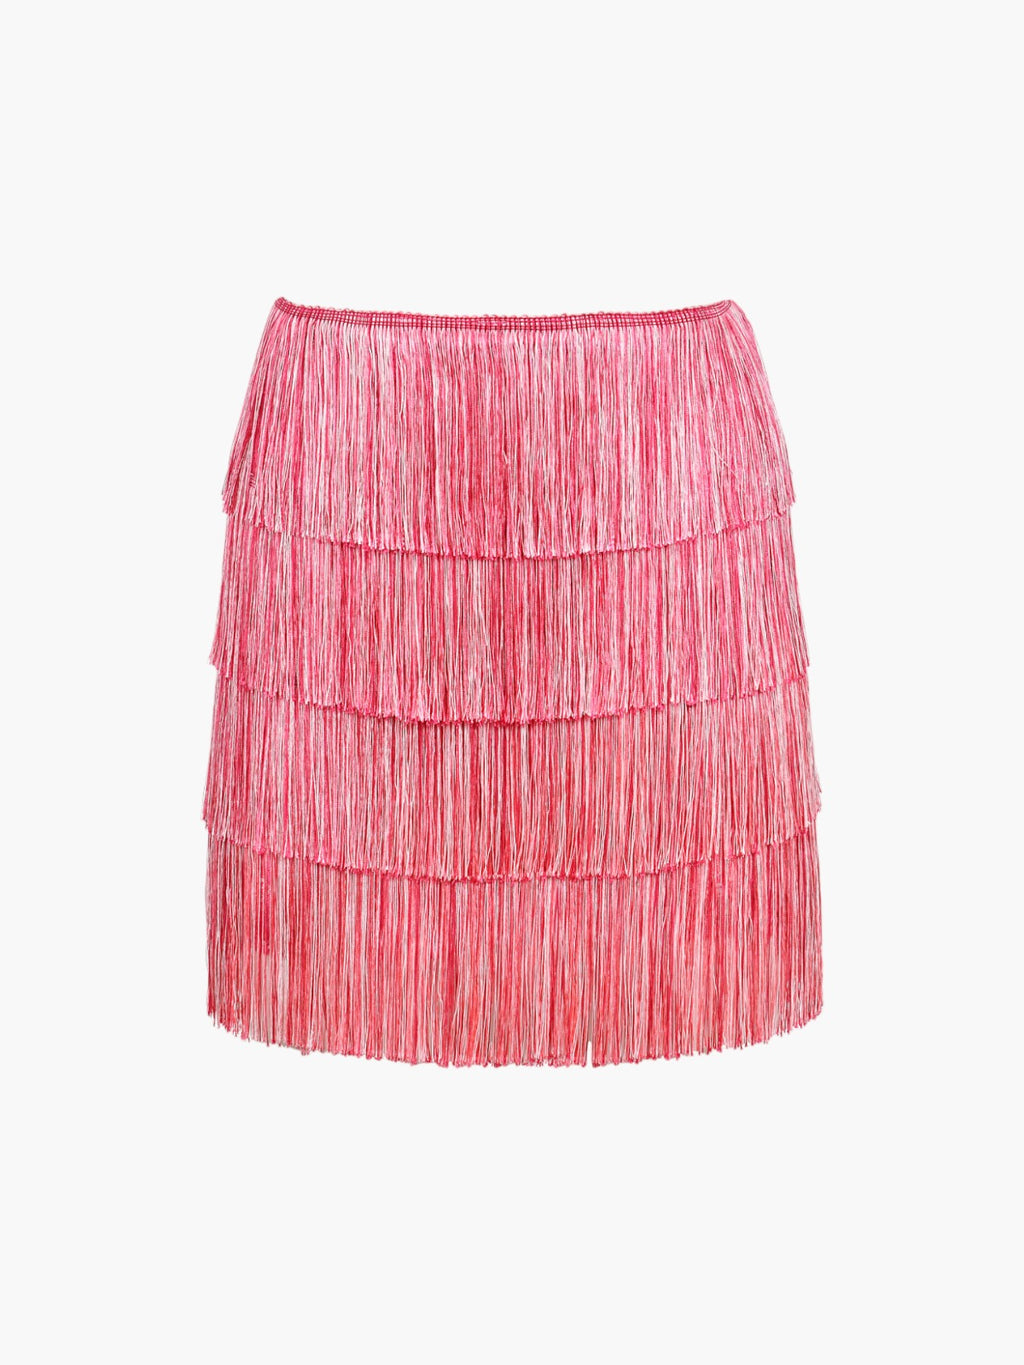 Sunrise Fringe Mini Skirt